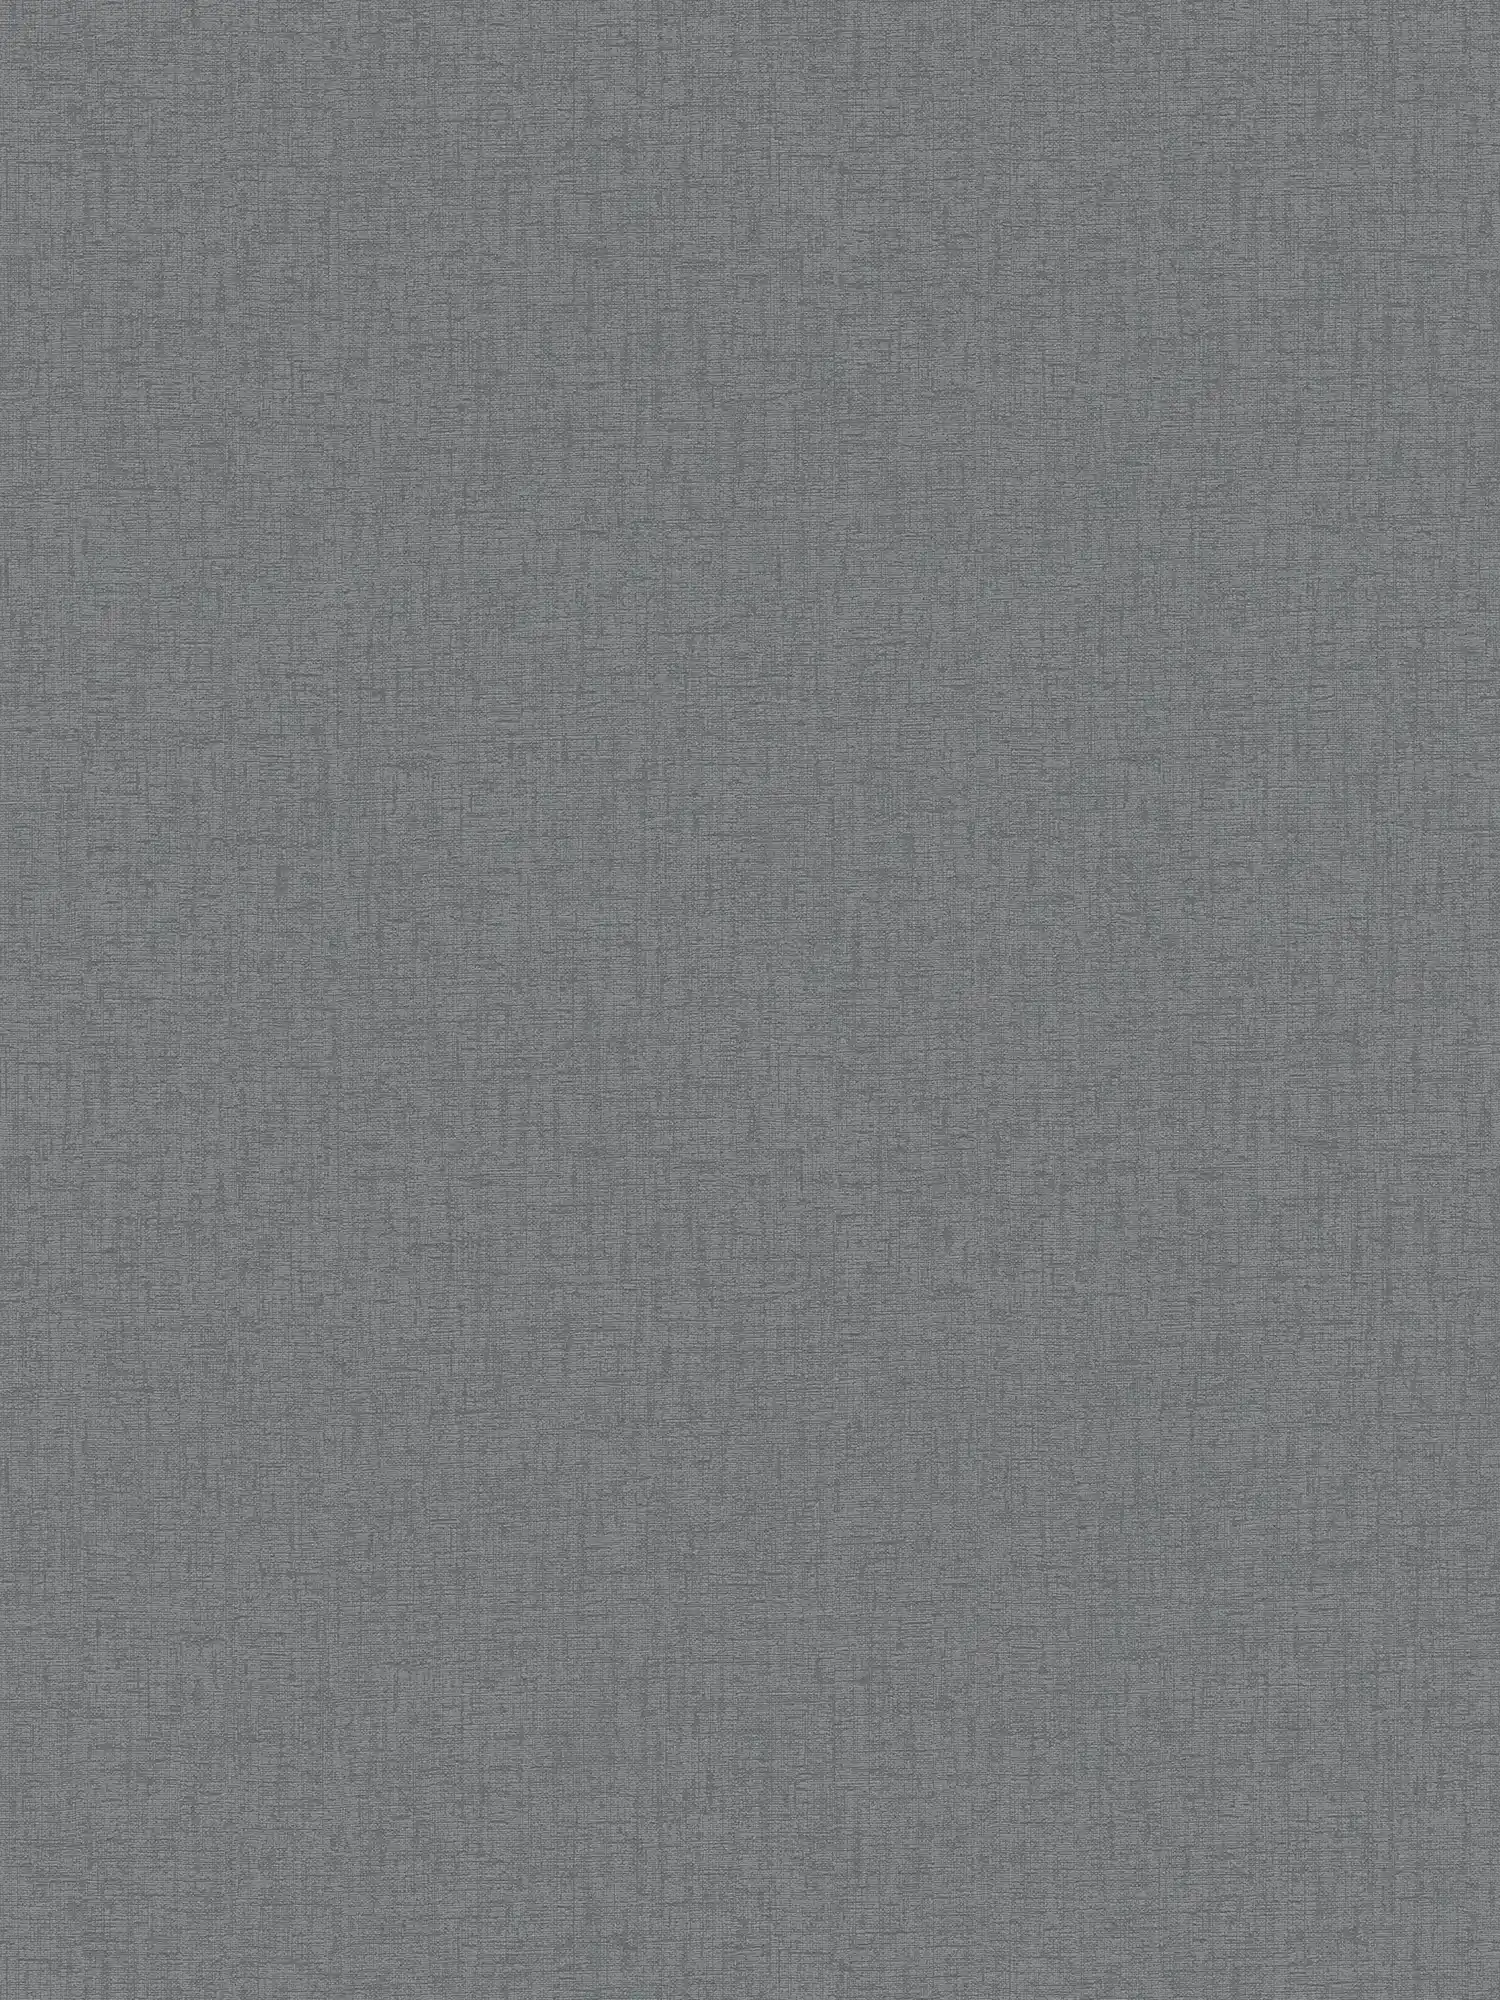 Carta da parati monocolore in tessuto non tessuto con trama tessile - antracite, grigio
